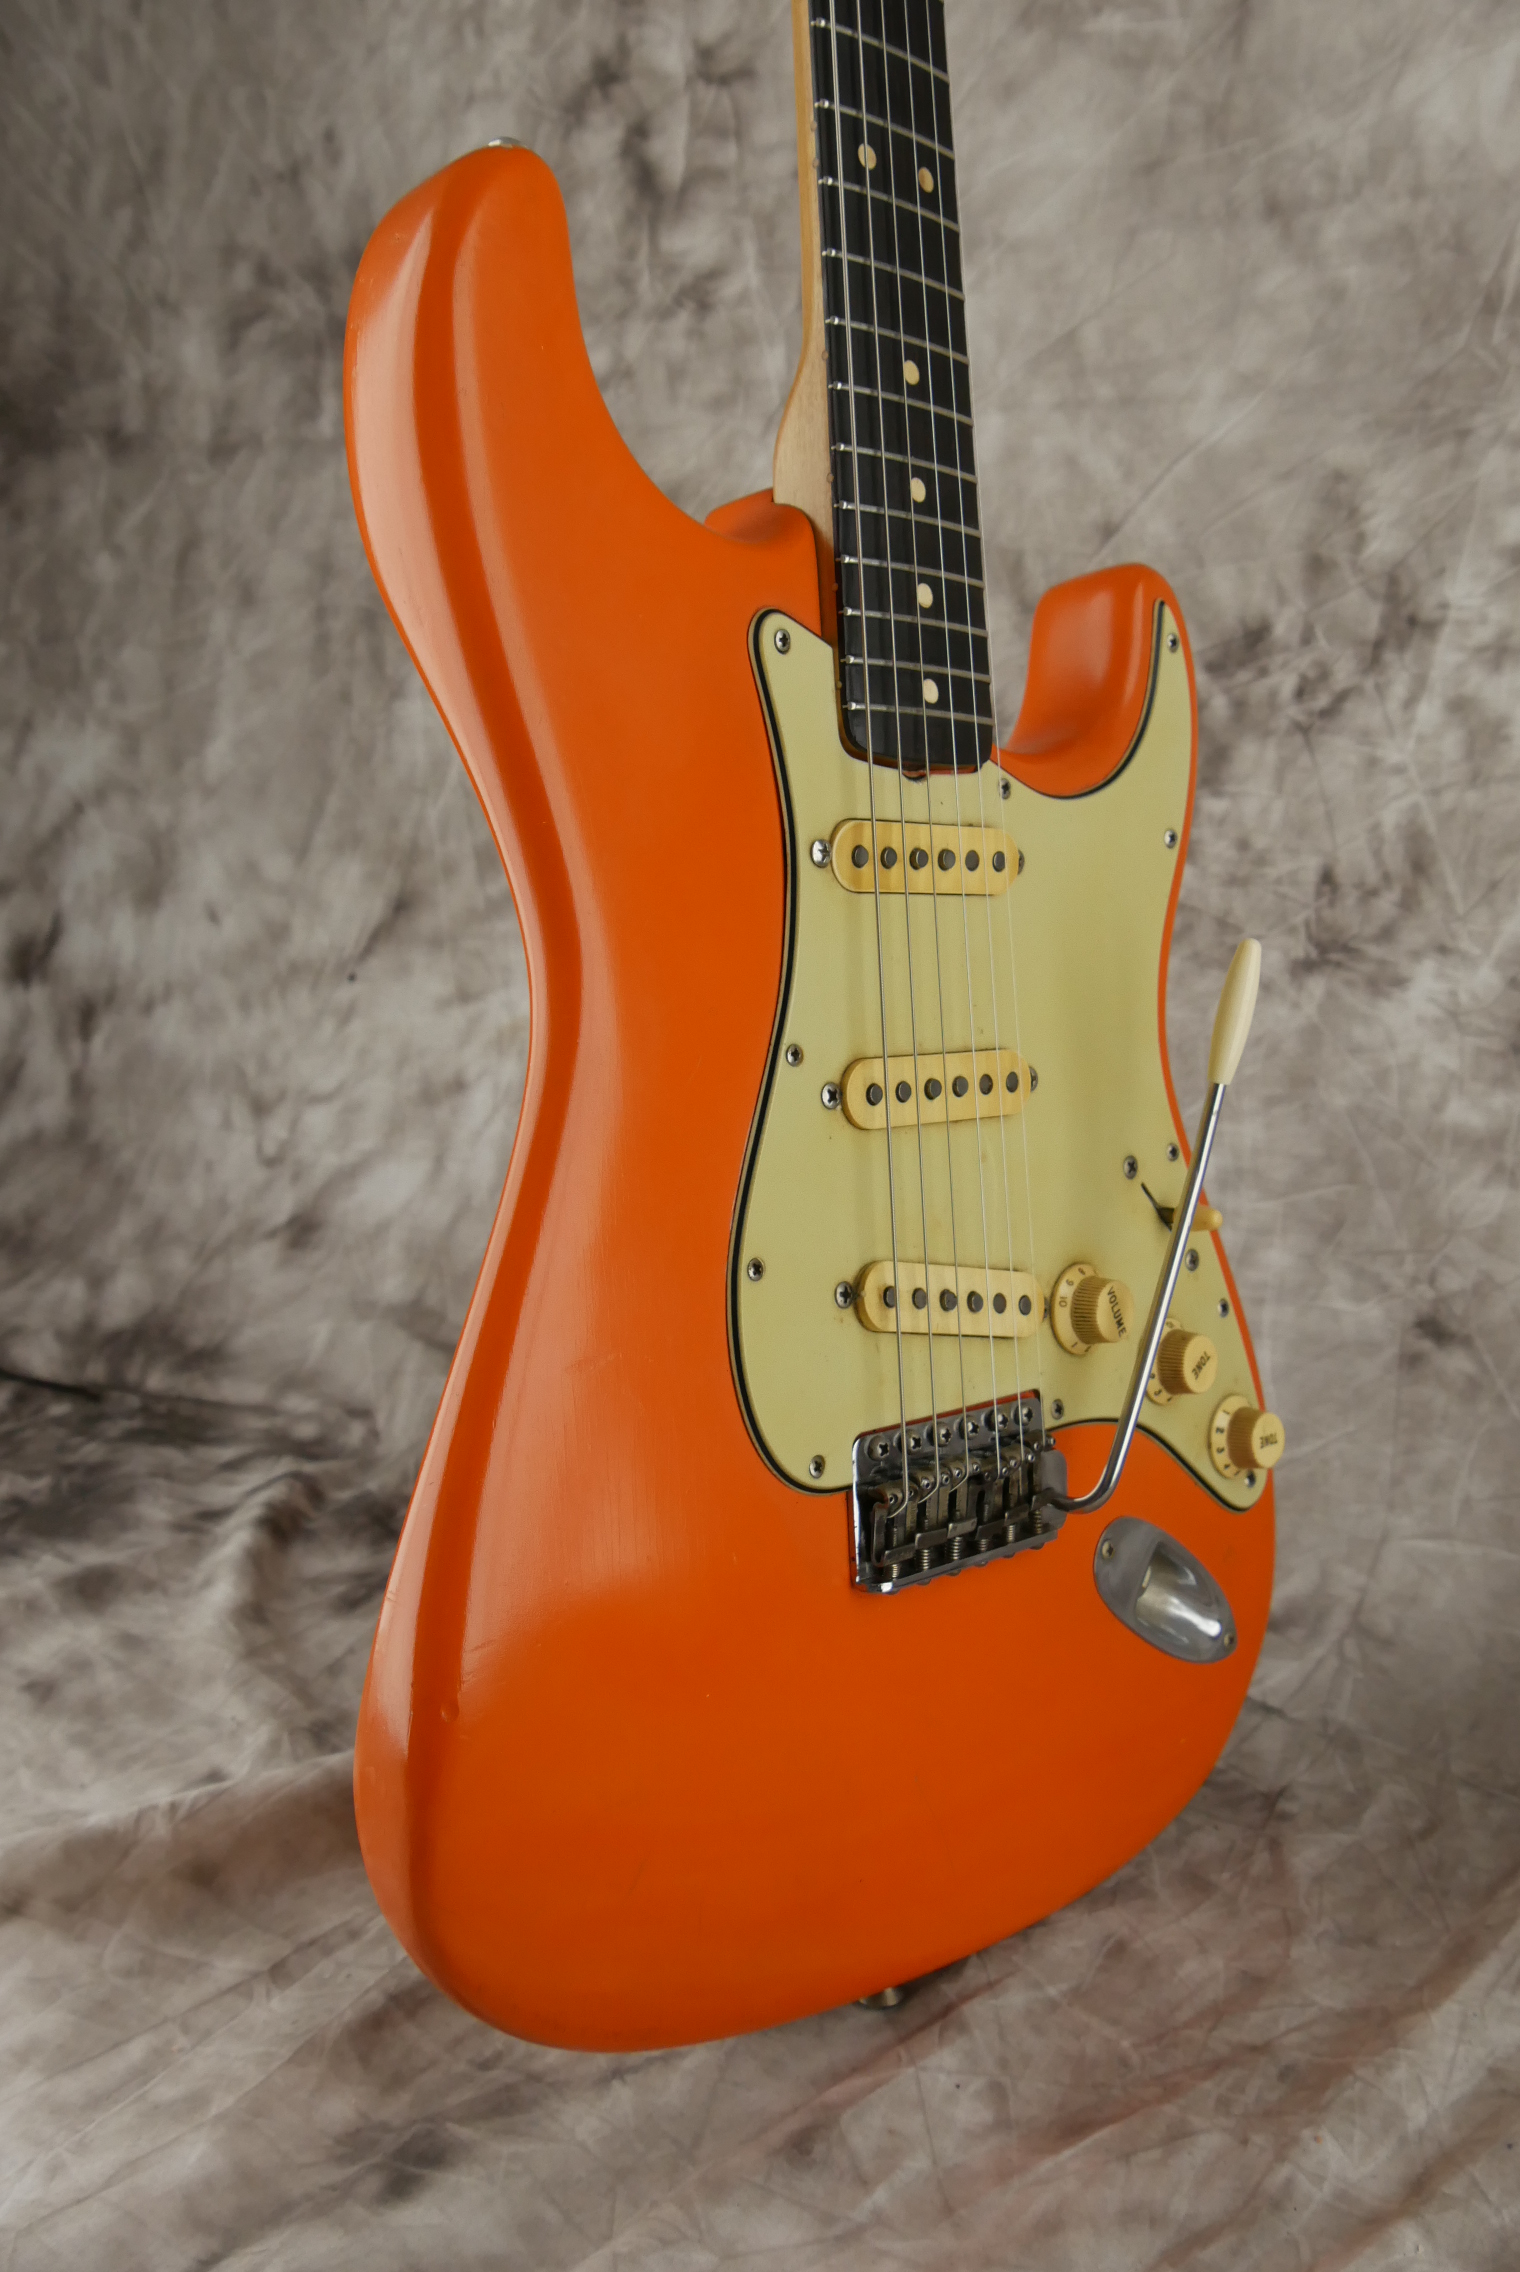 Fender-Stratocaster-1964-orange-refinish-005.JPG